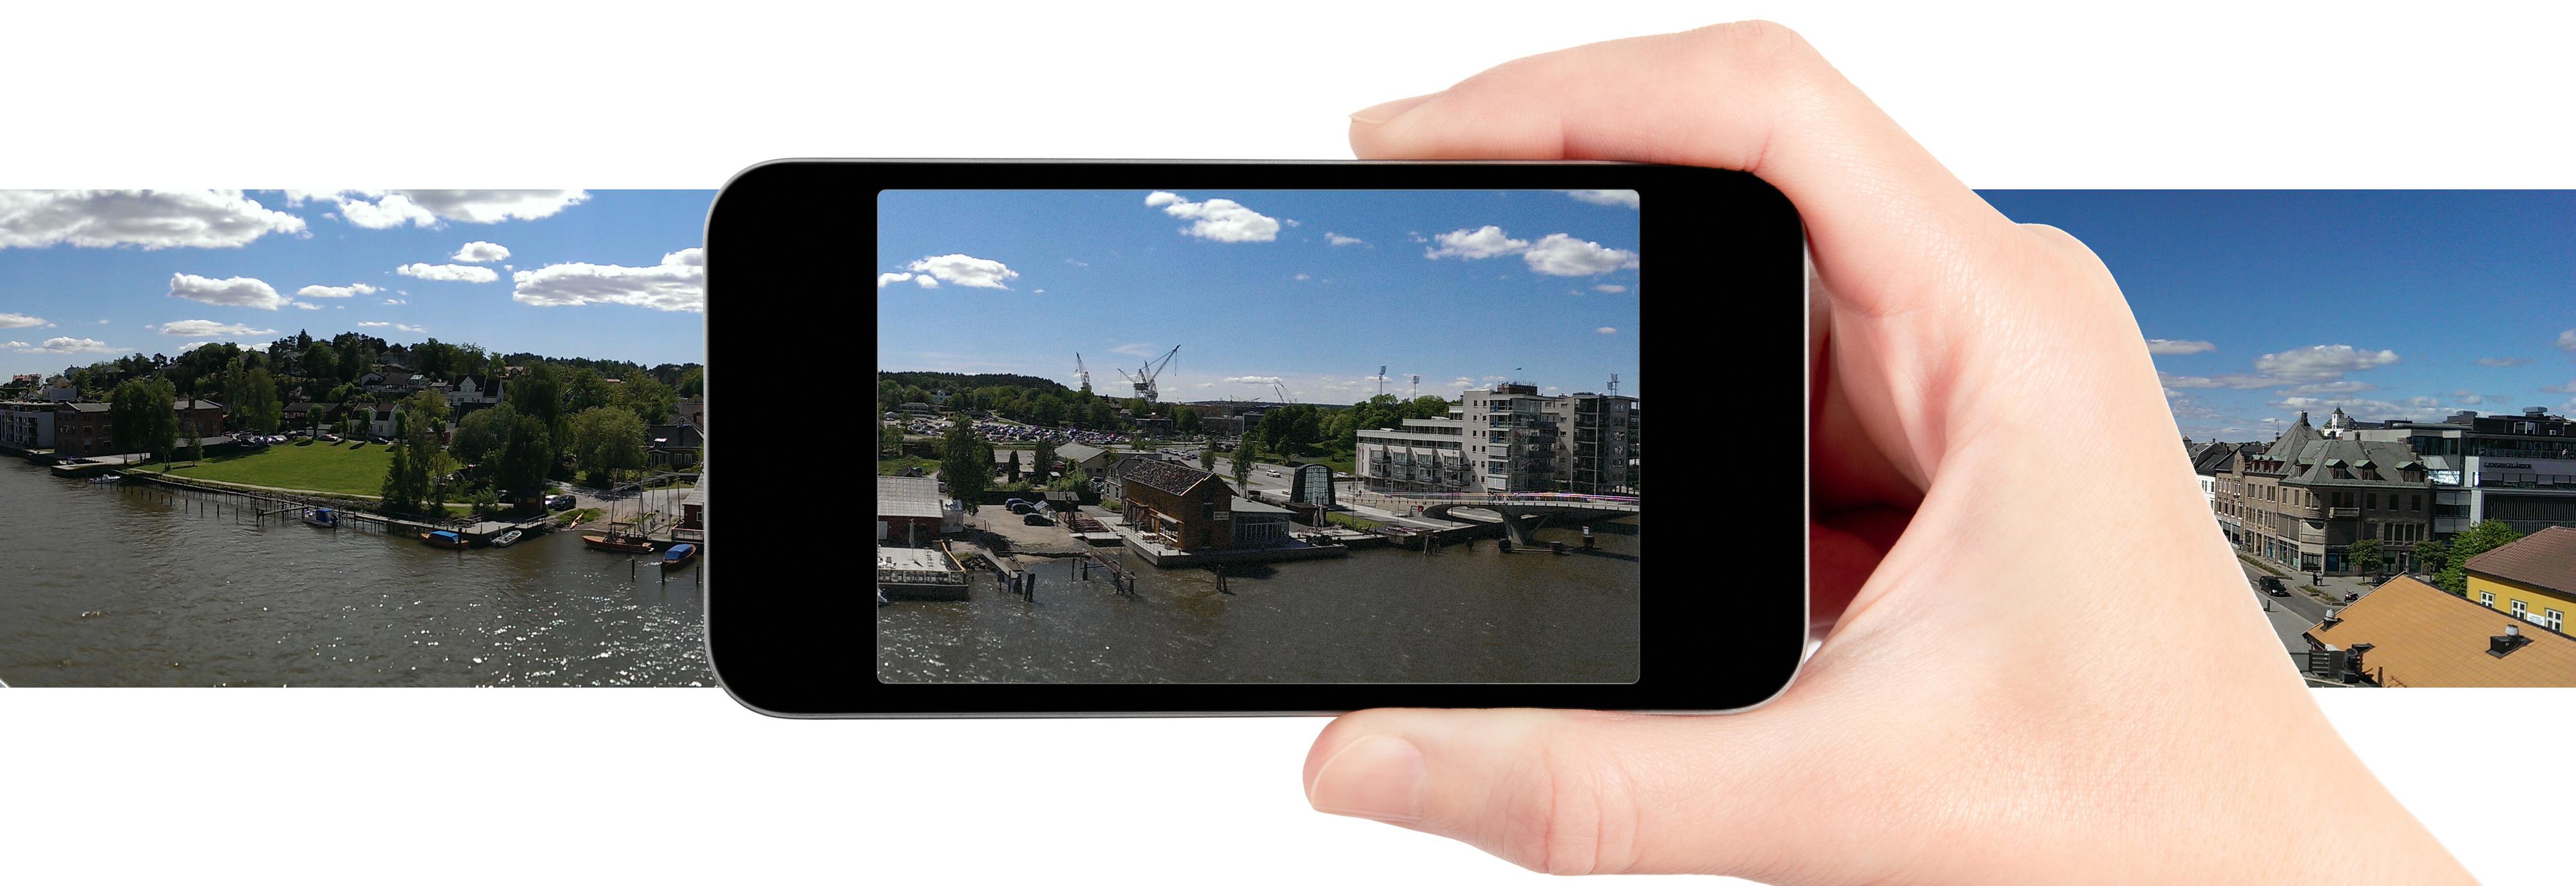 De fleste nyere mobiler har en panoramafunksjon. Har den ikke det, finnes det også panorama-apper du kan laste ned.
Foto: Shutterstock / Kurt Lekanger / Montasje